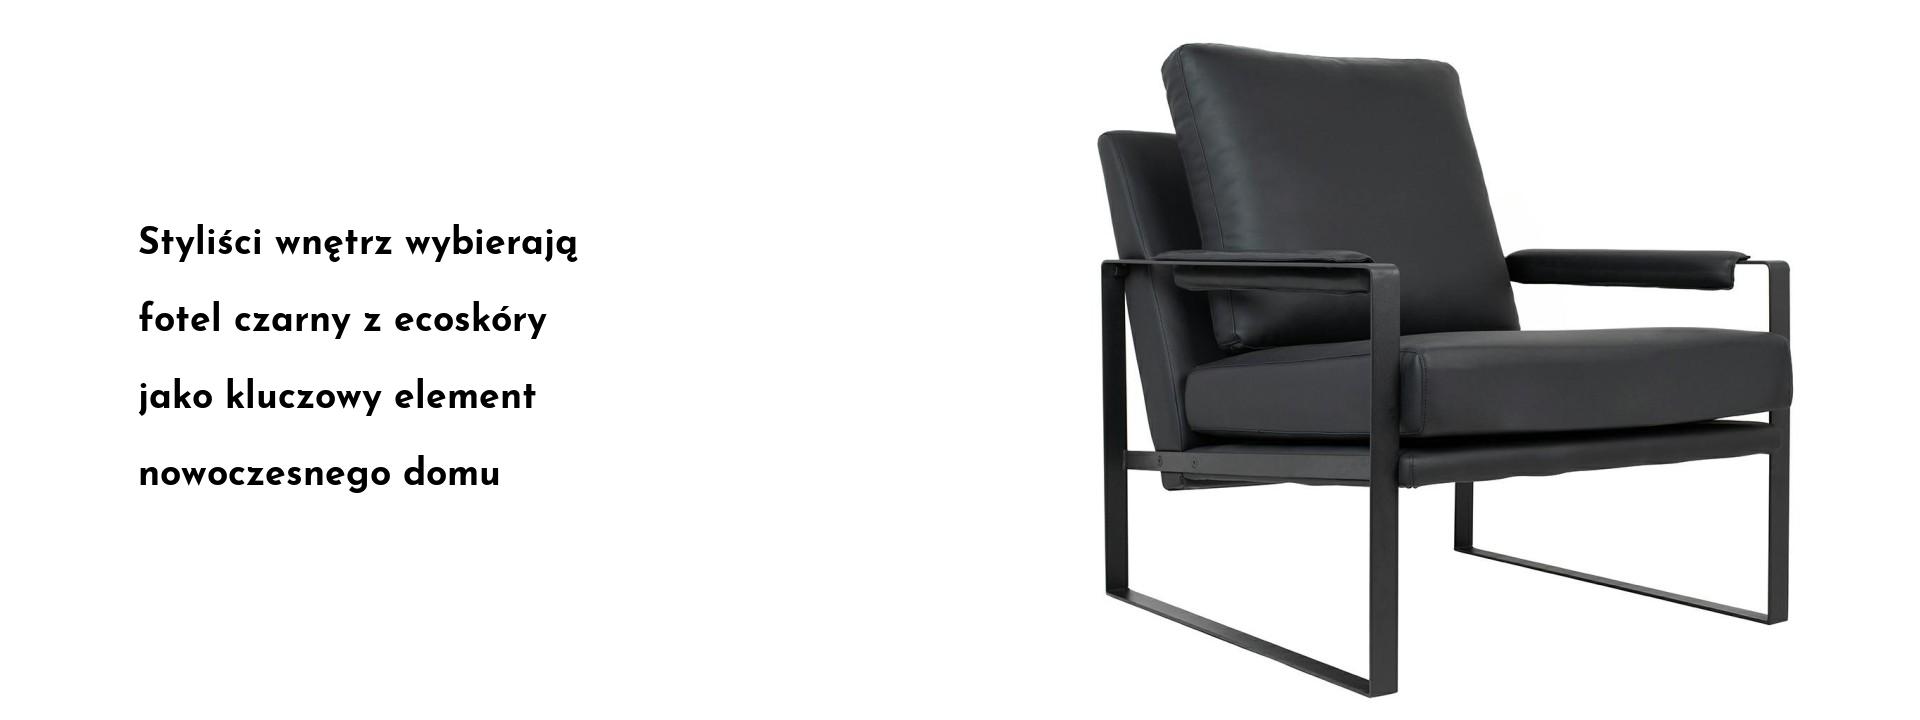 Styliści wnętrz wybierają fotel czarny z ecoskóry jako kluczowy element nowoczesnego domu